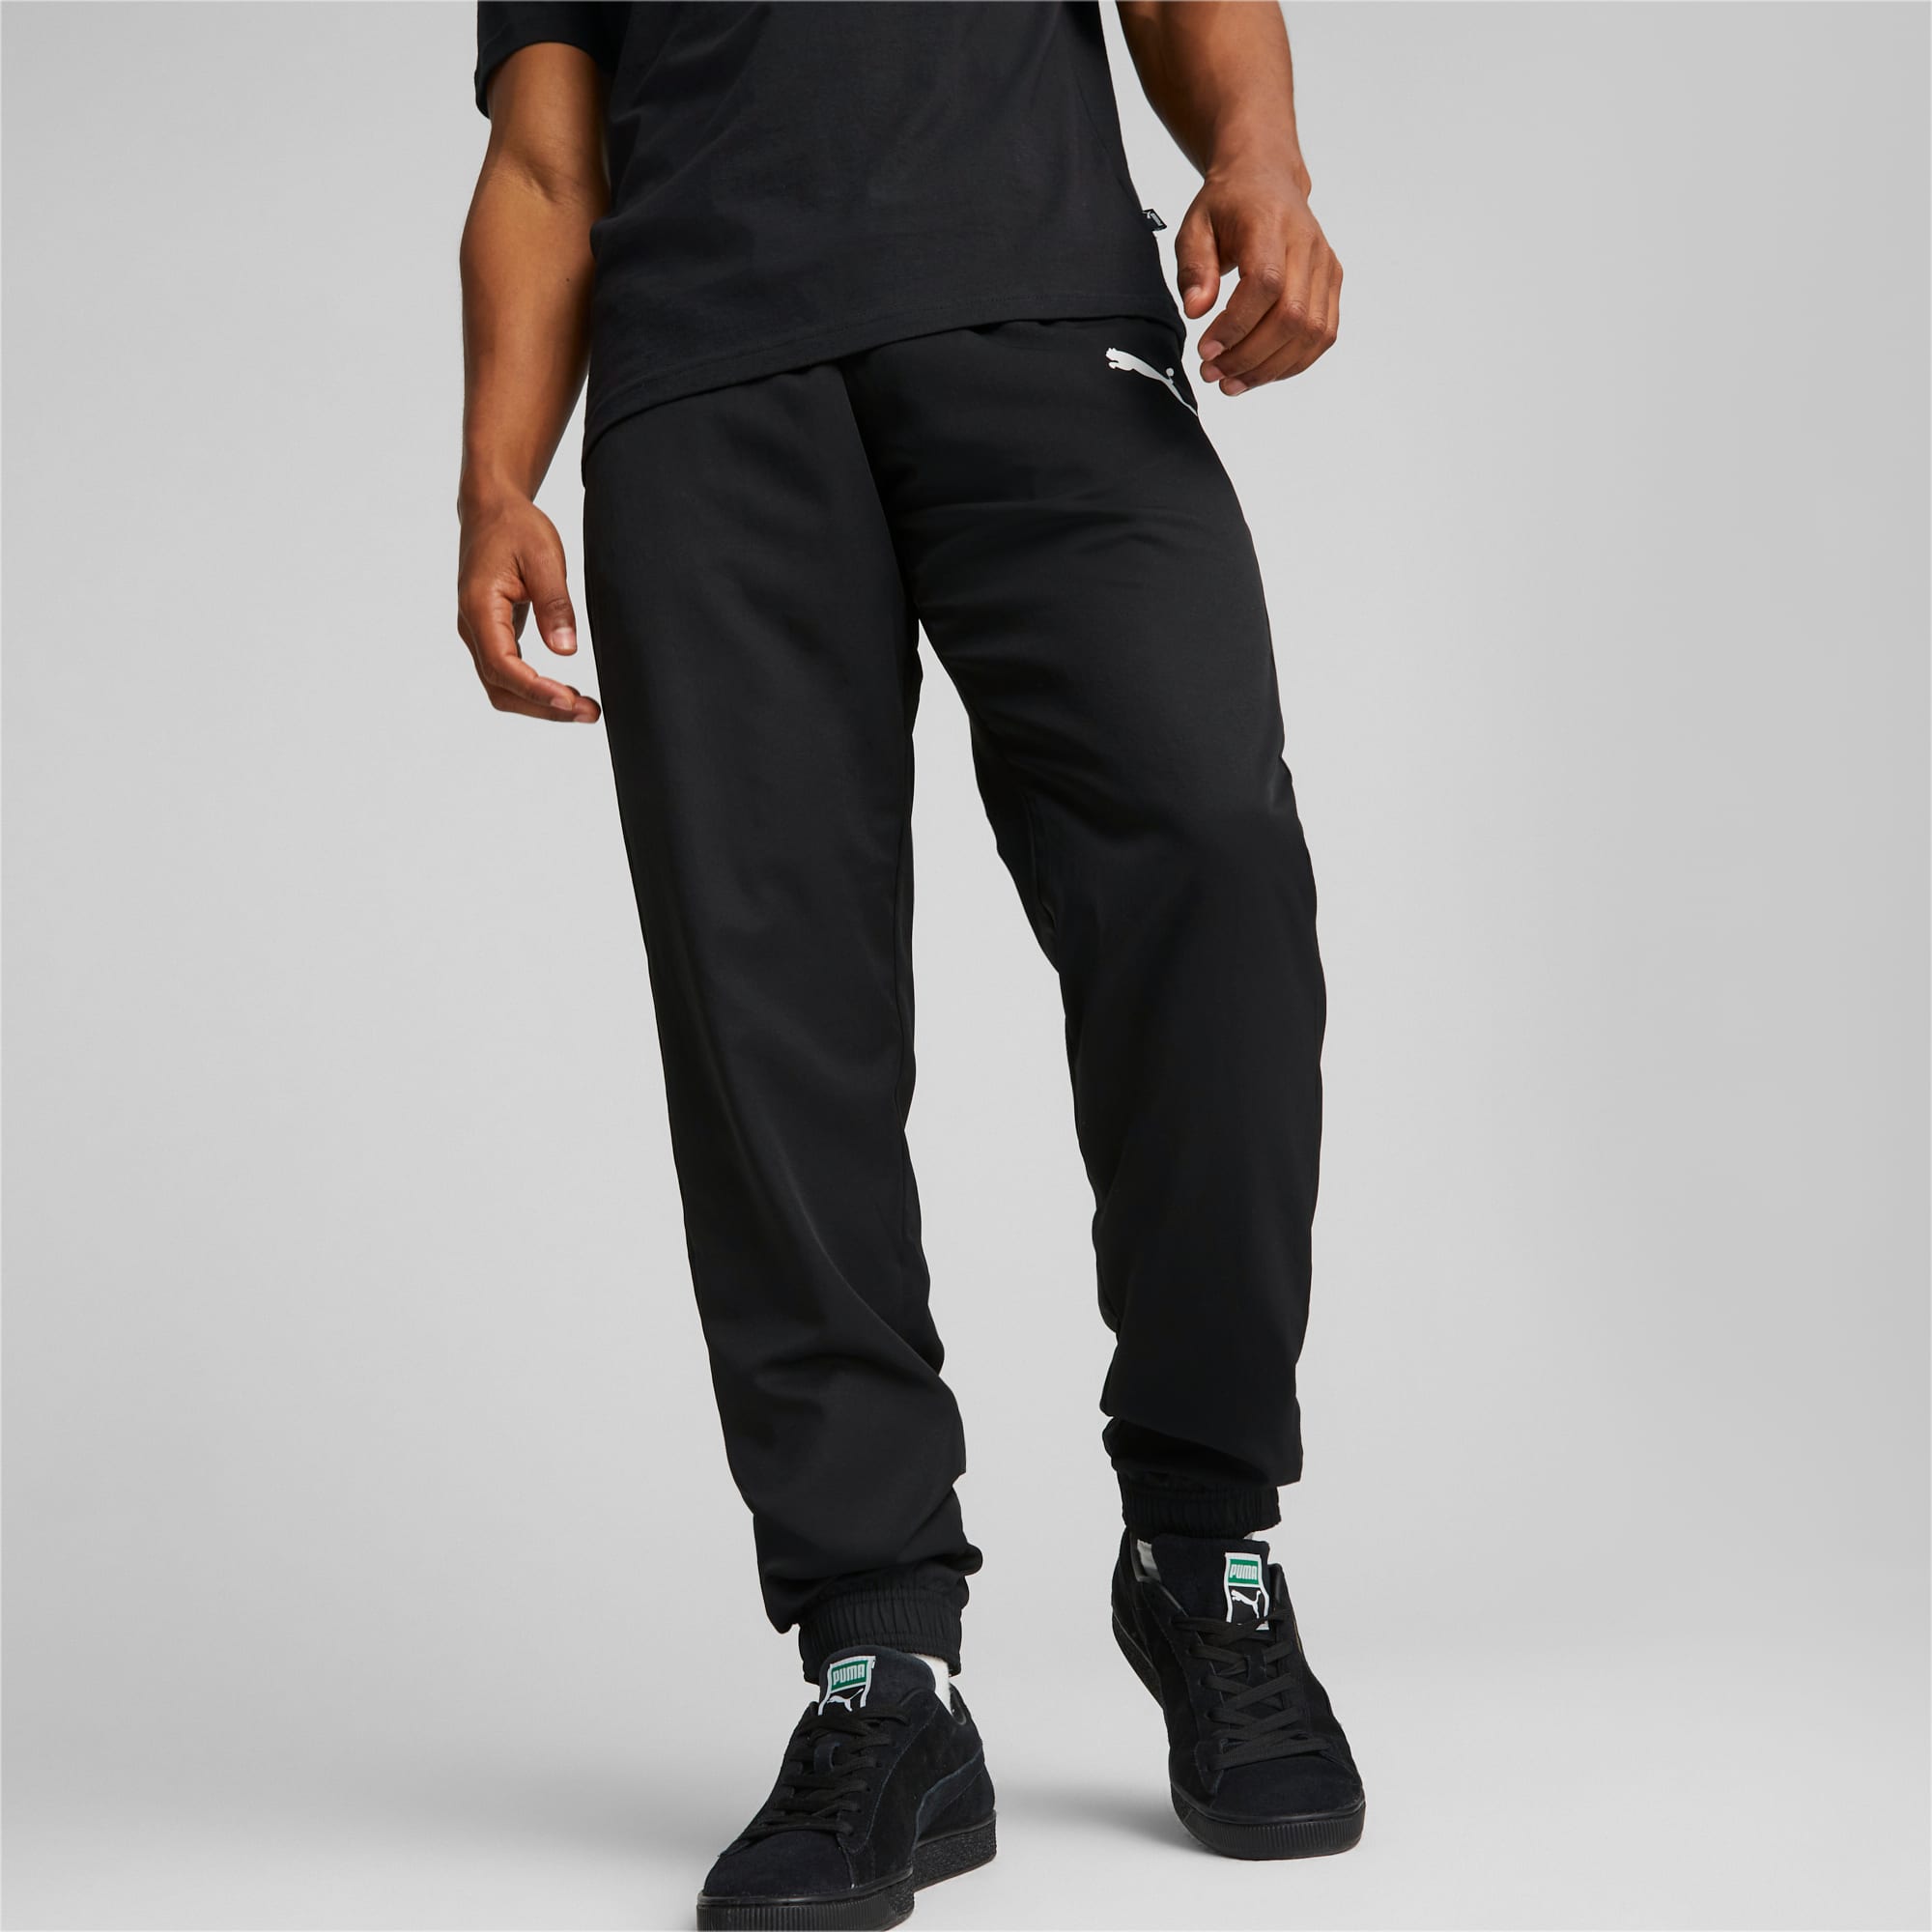 PUMA Active Woven Men's Pants, Black, Size XL, Clothing